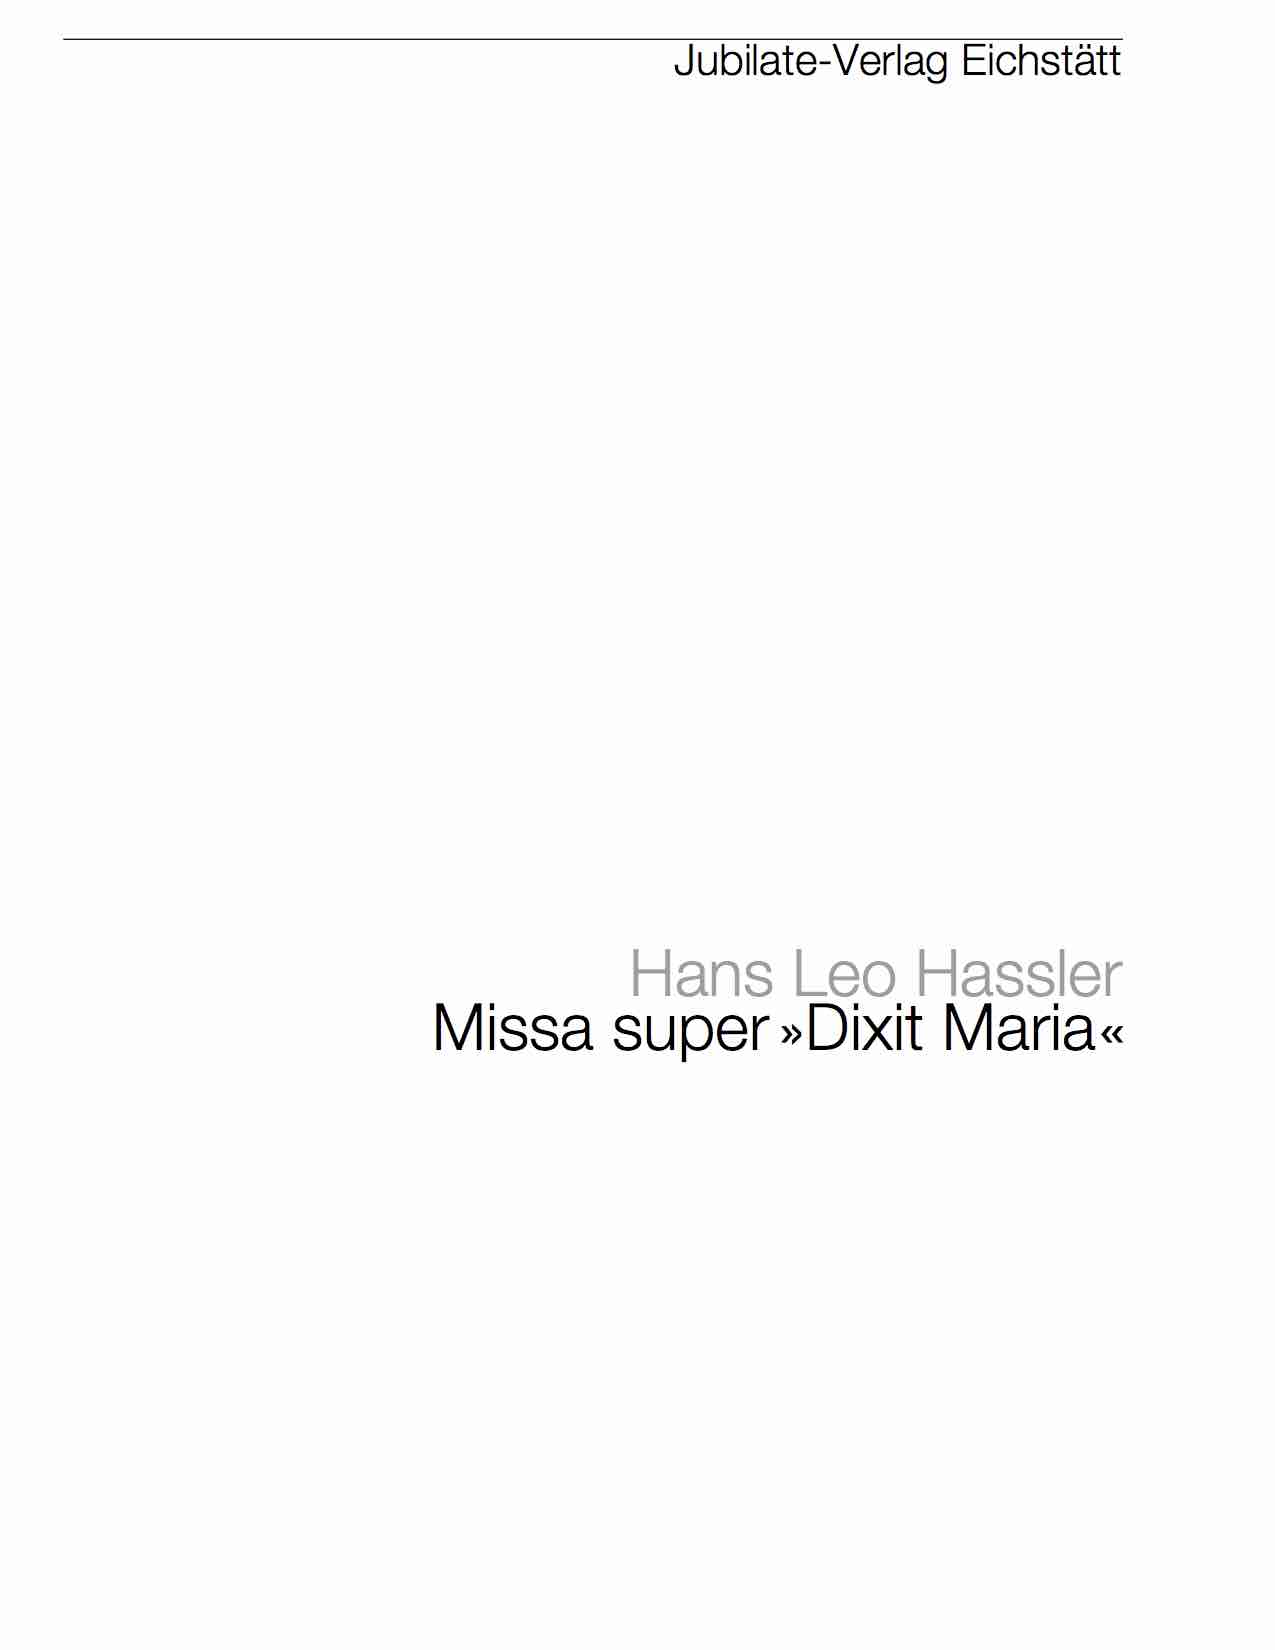 Missa "Super Dixit Maria" - ohne Credo